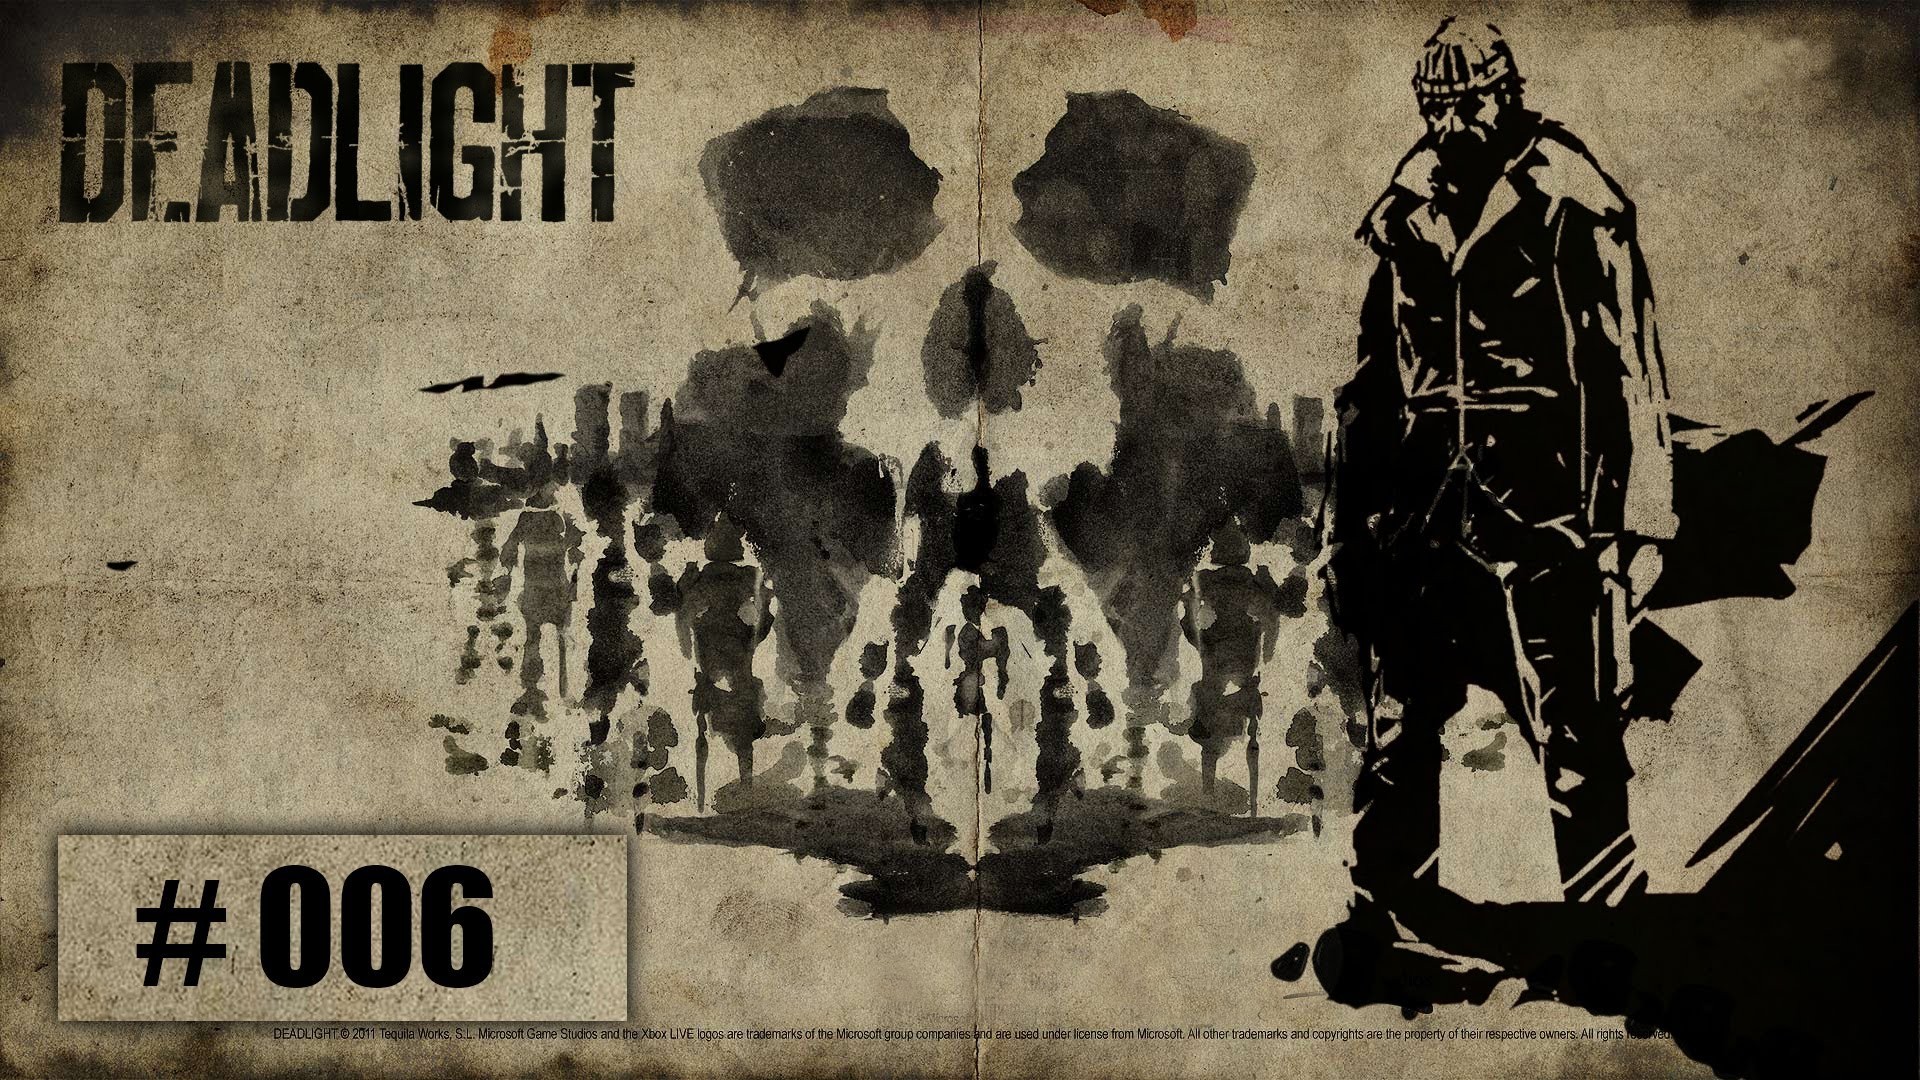 video Games, Deadlight Wallpaper